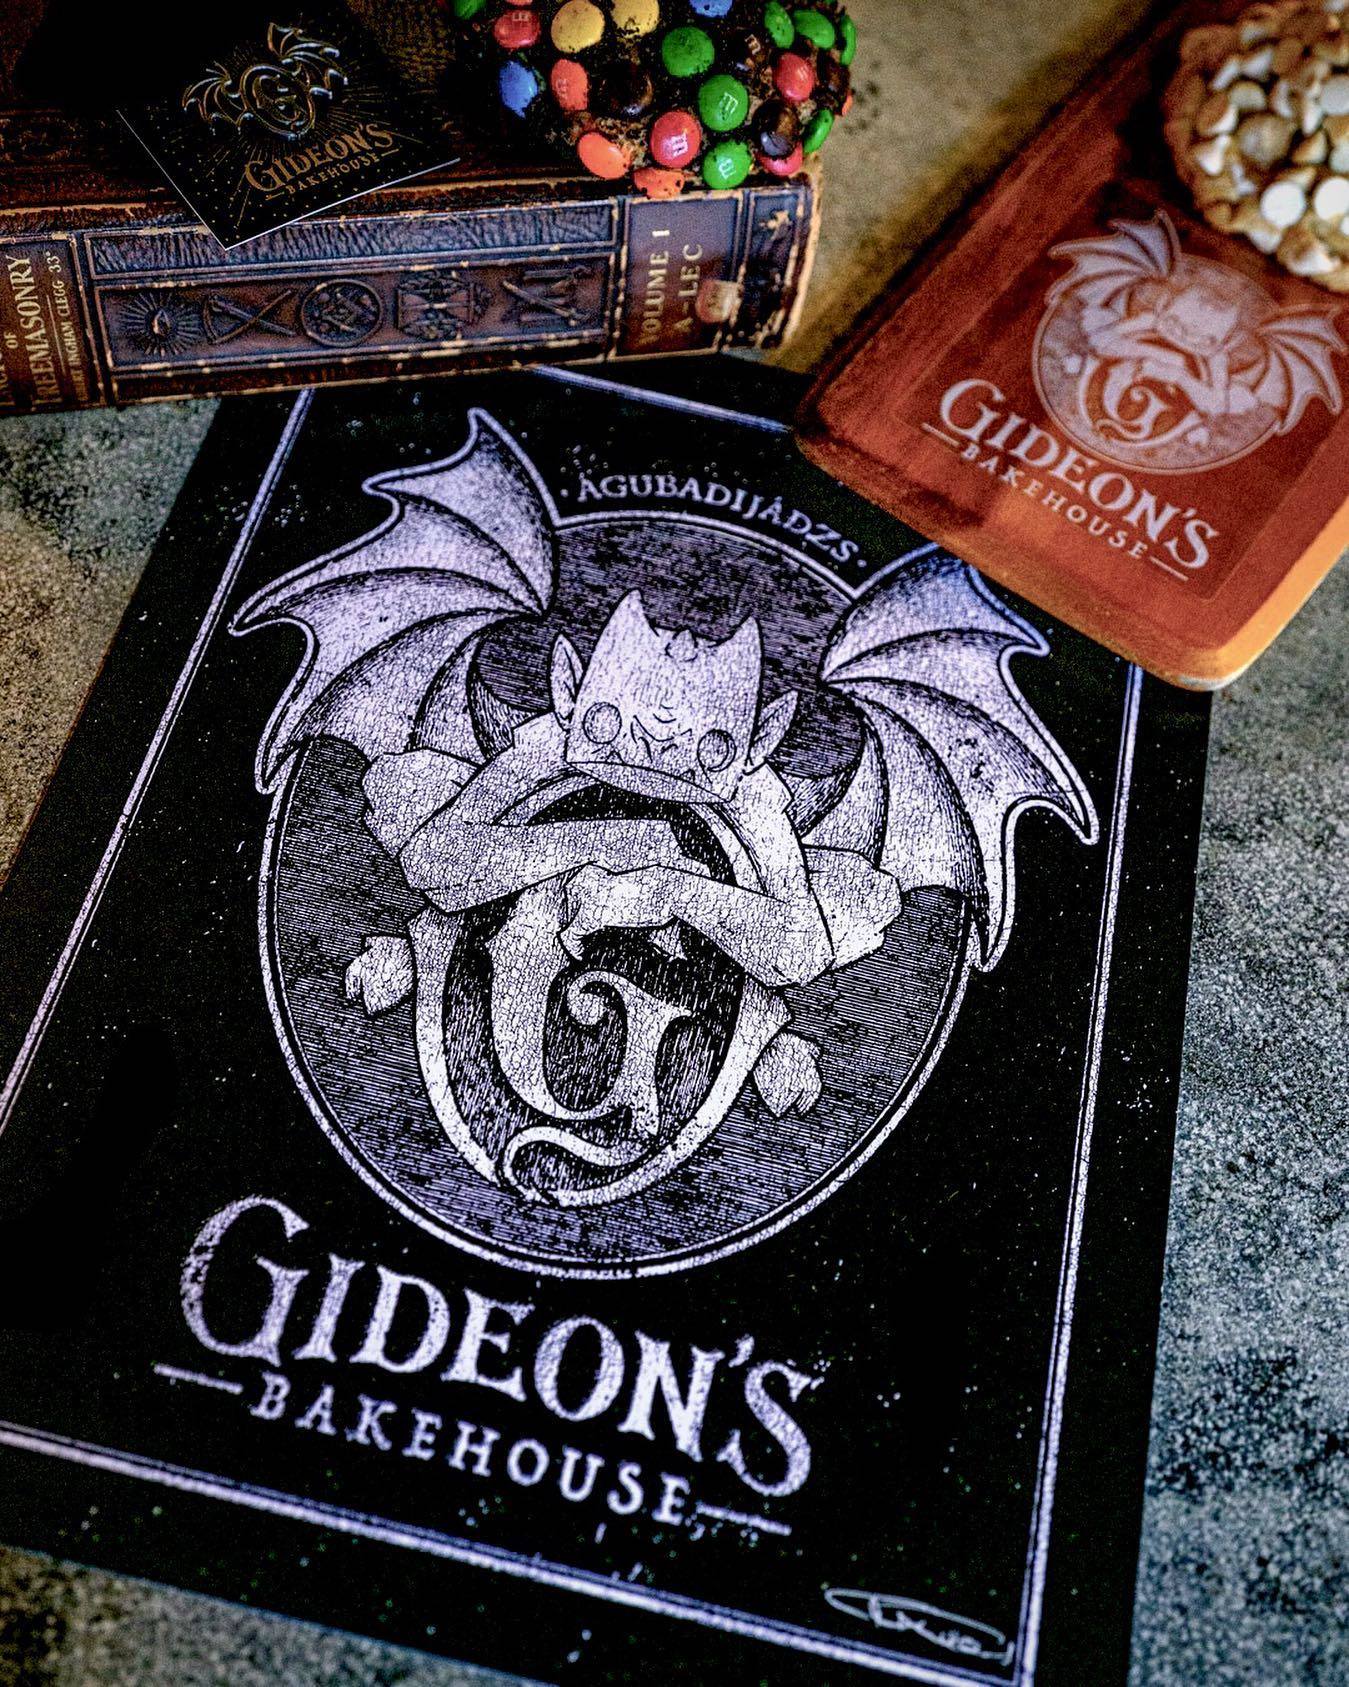 Gideon's Bakehouse hiring orlando